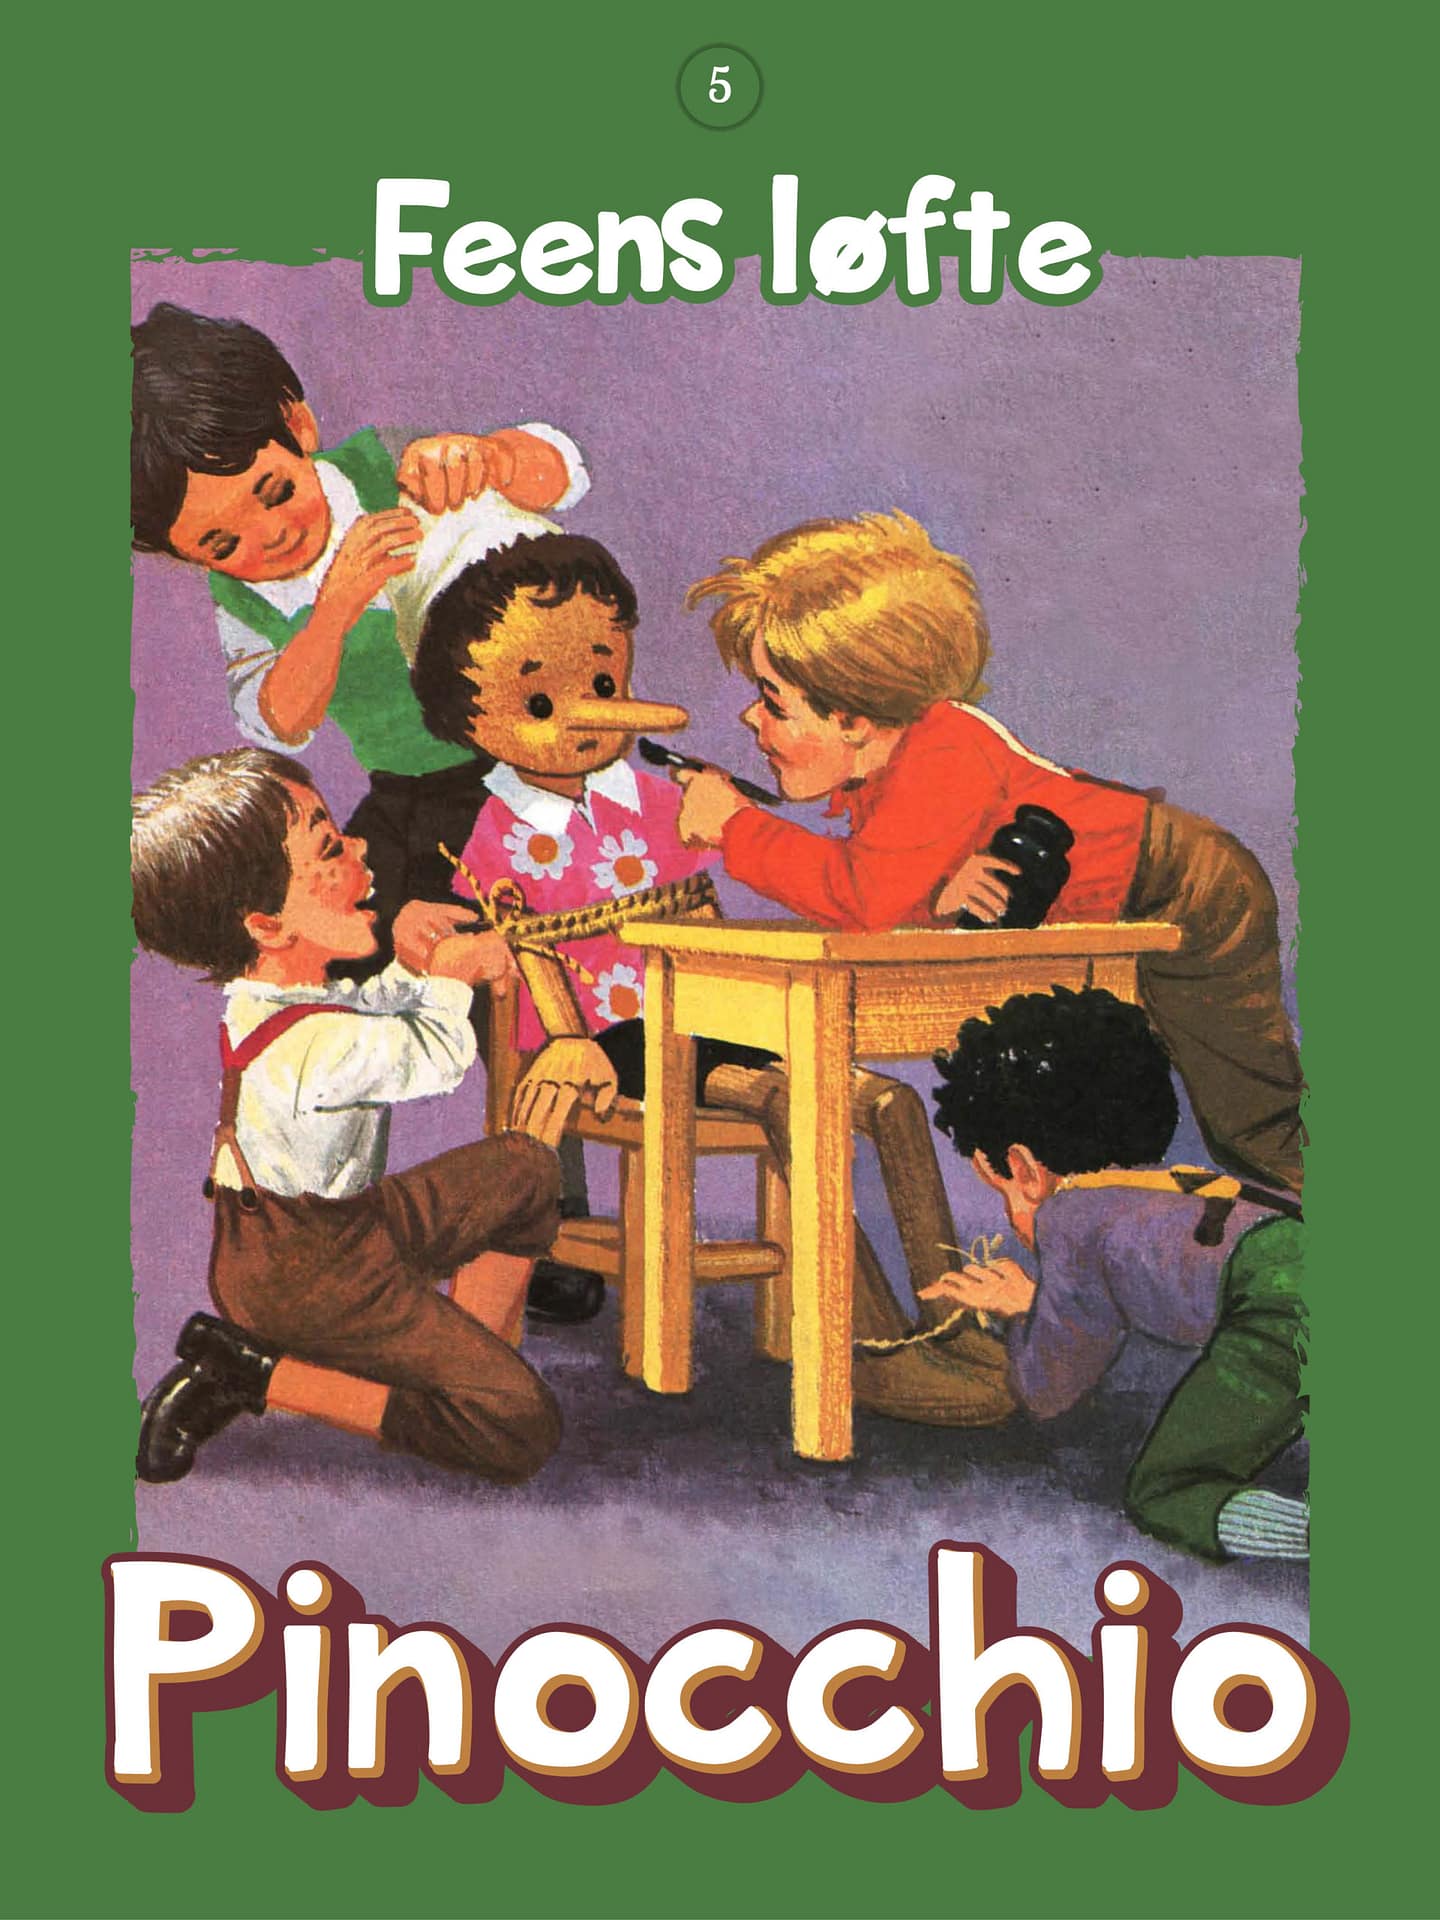 Pinocchio del 5, Feens løfte